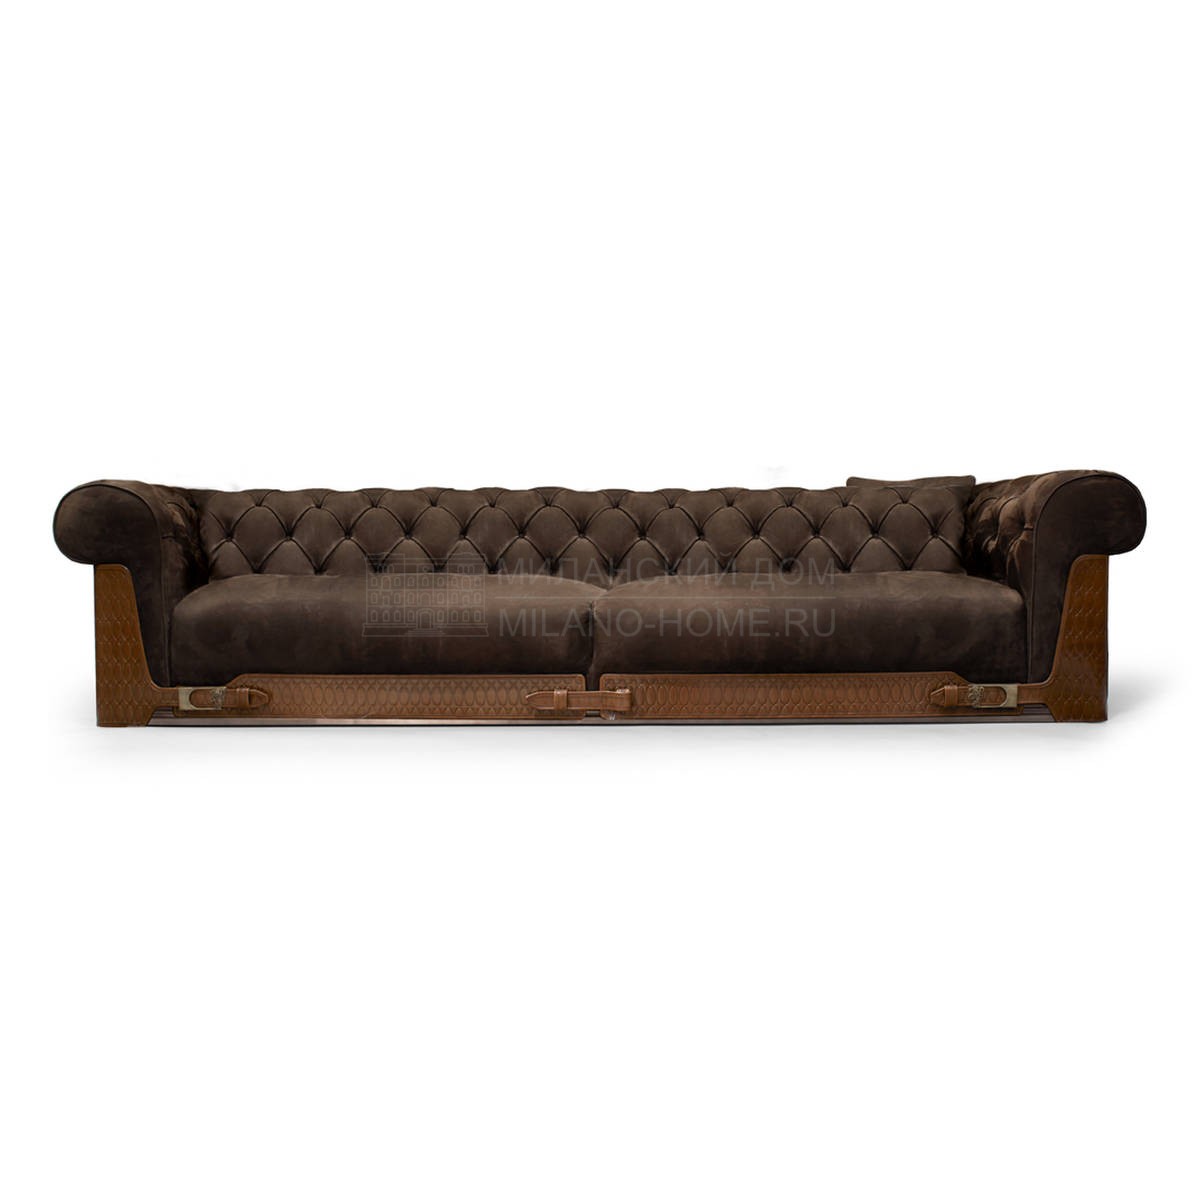 Прямой диван Chester Laurence sofa из Италии фабрики IPE CAVALLI VISIONNAIRE